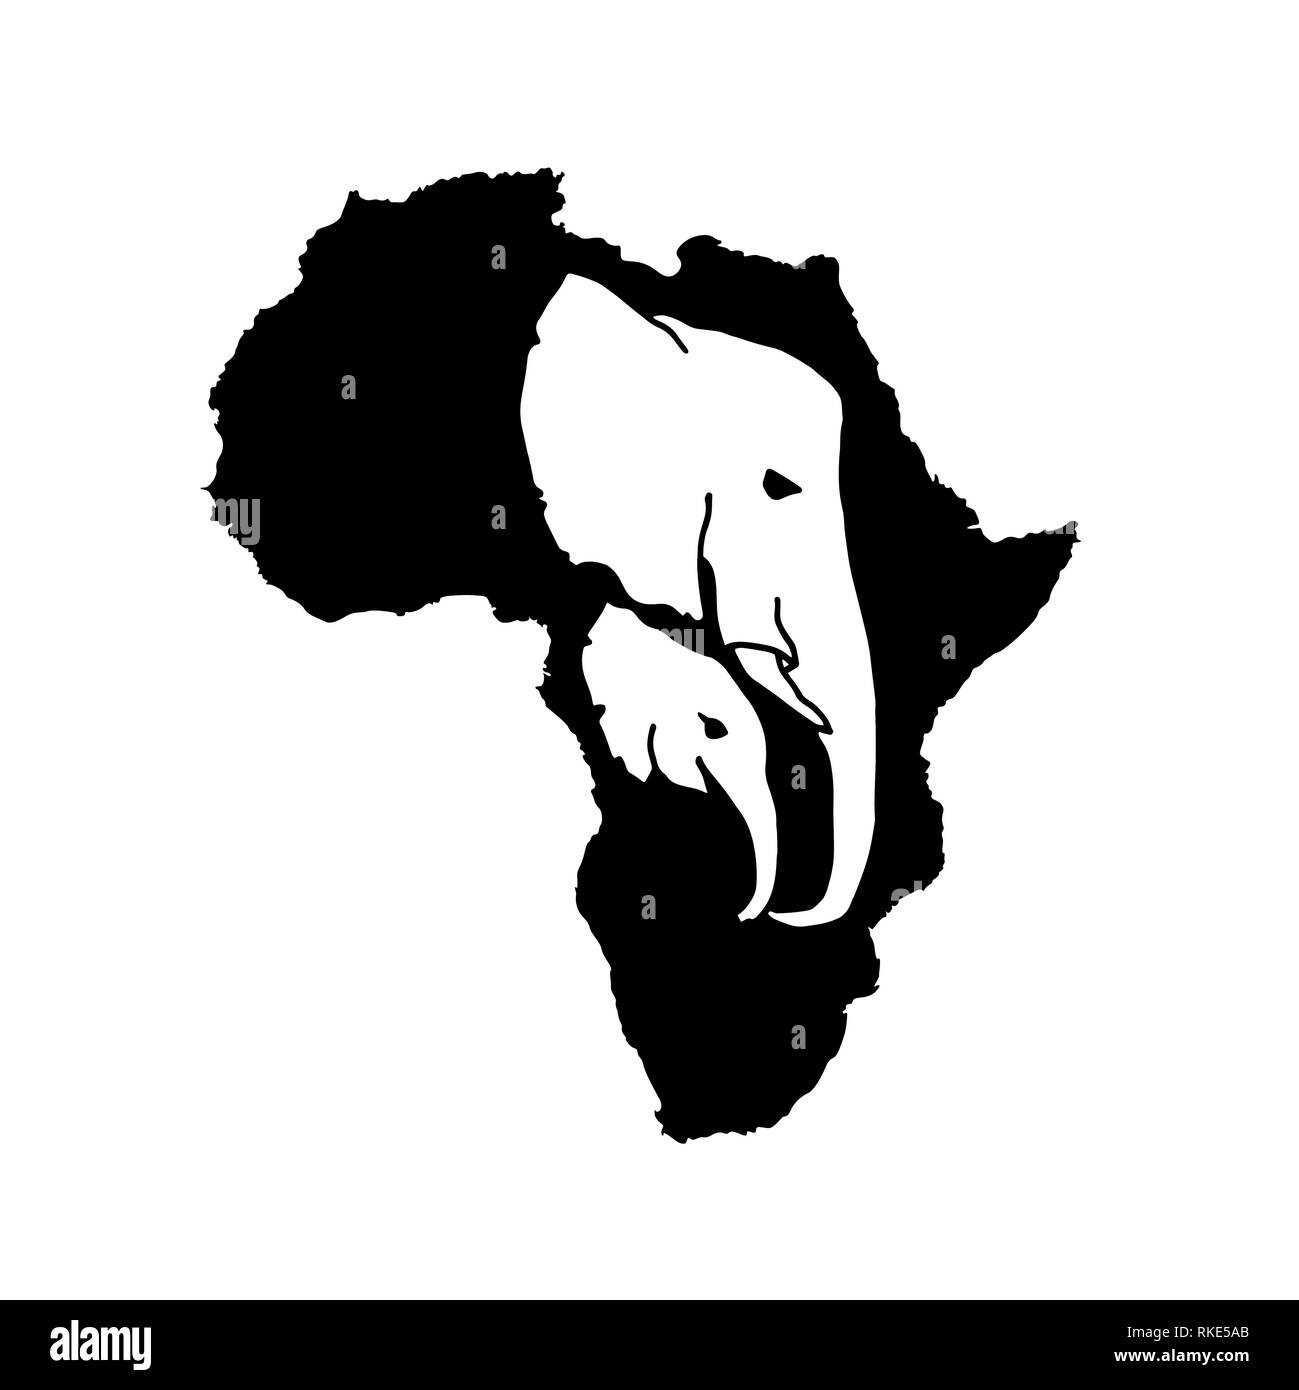 Vector silhouette dell Africa nera con due white elephant silhouette di testa all'interno. Madre di elefante e testa di bambino incide silhouette africana Illustrazione Vettoriale